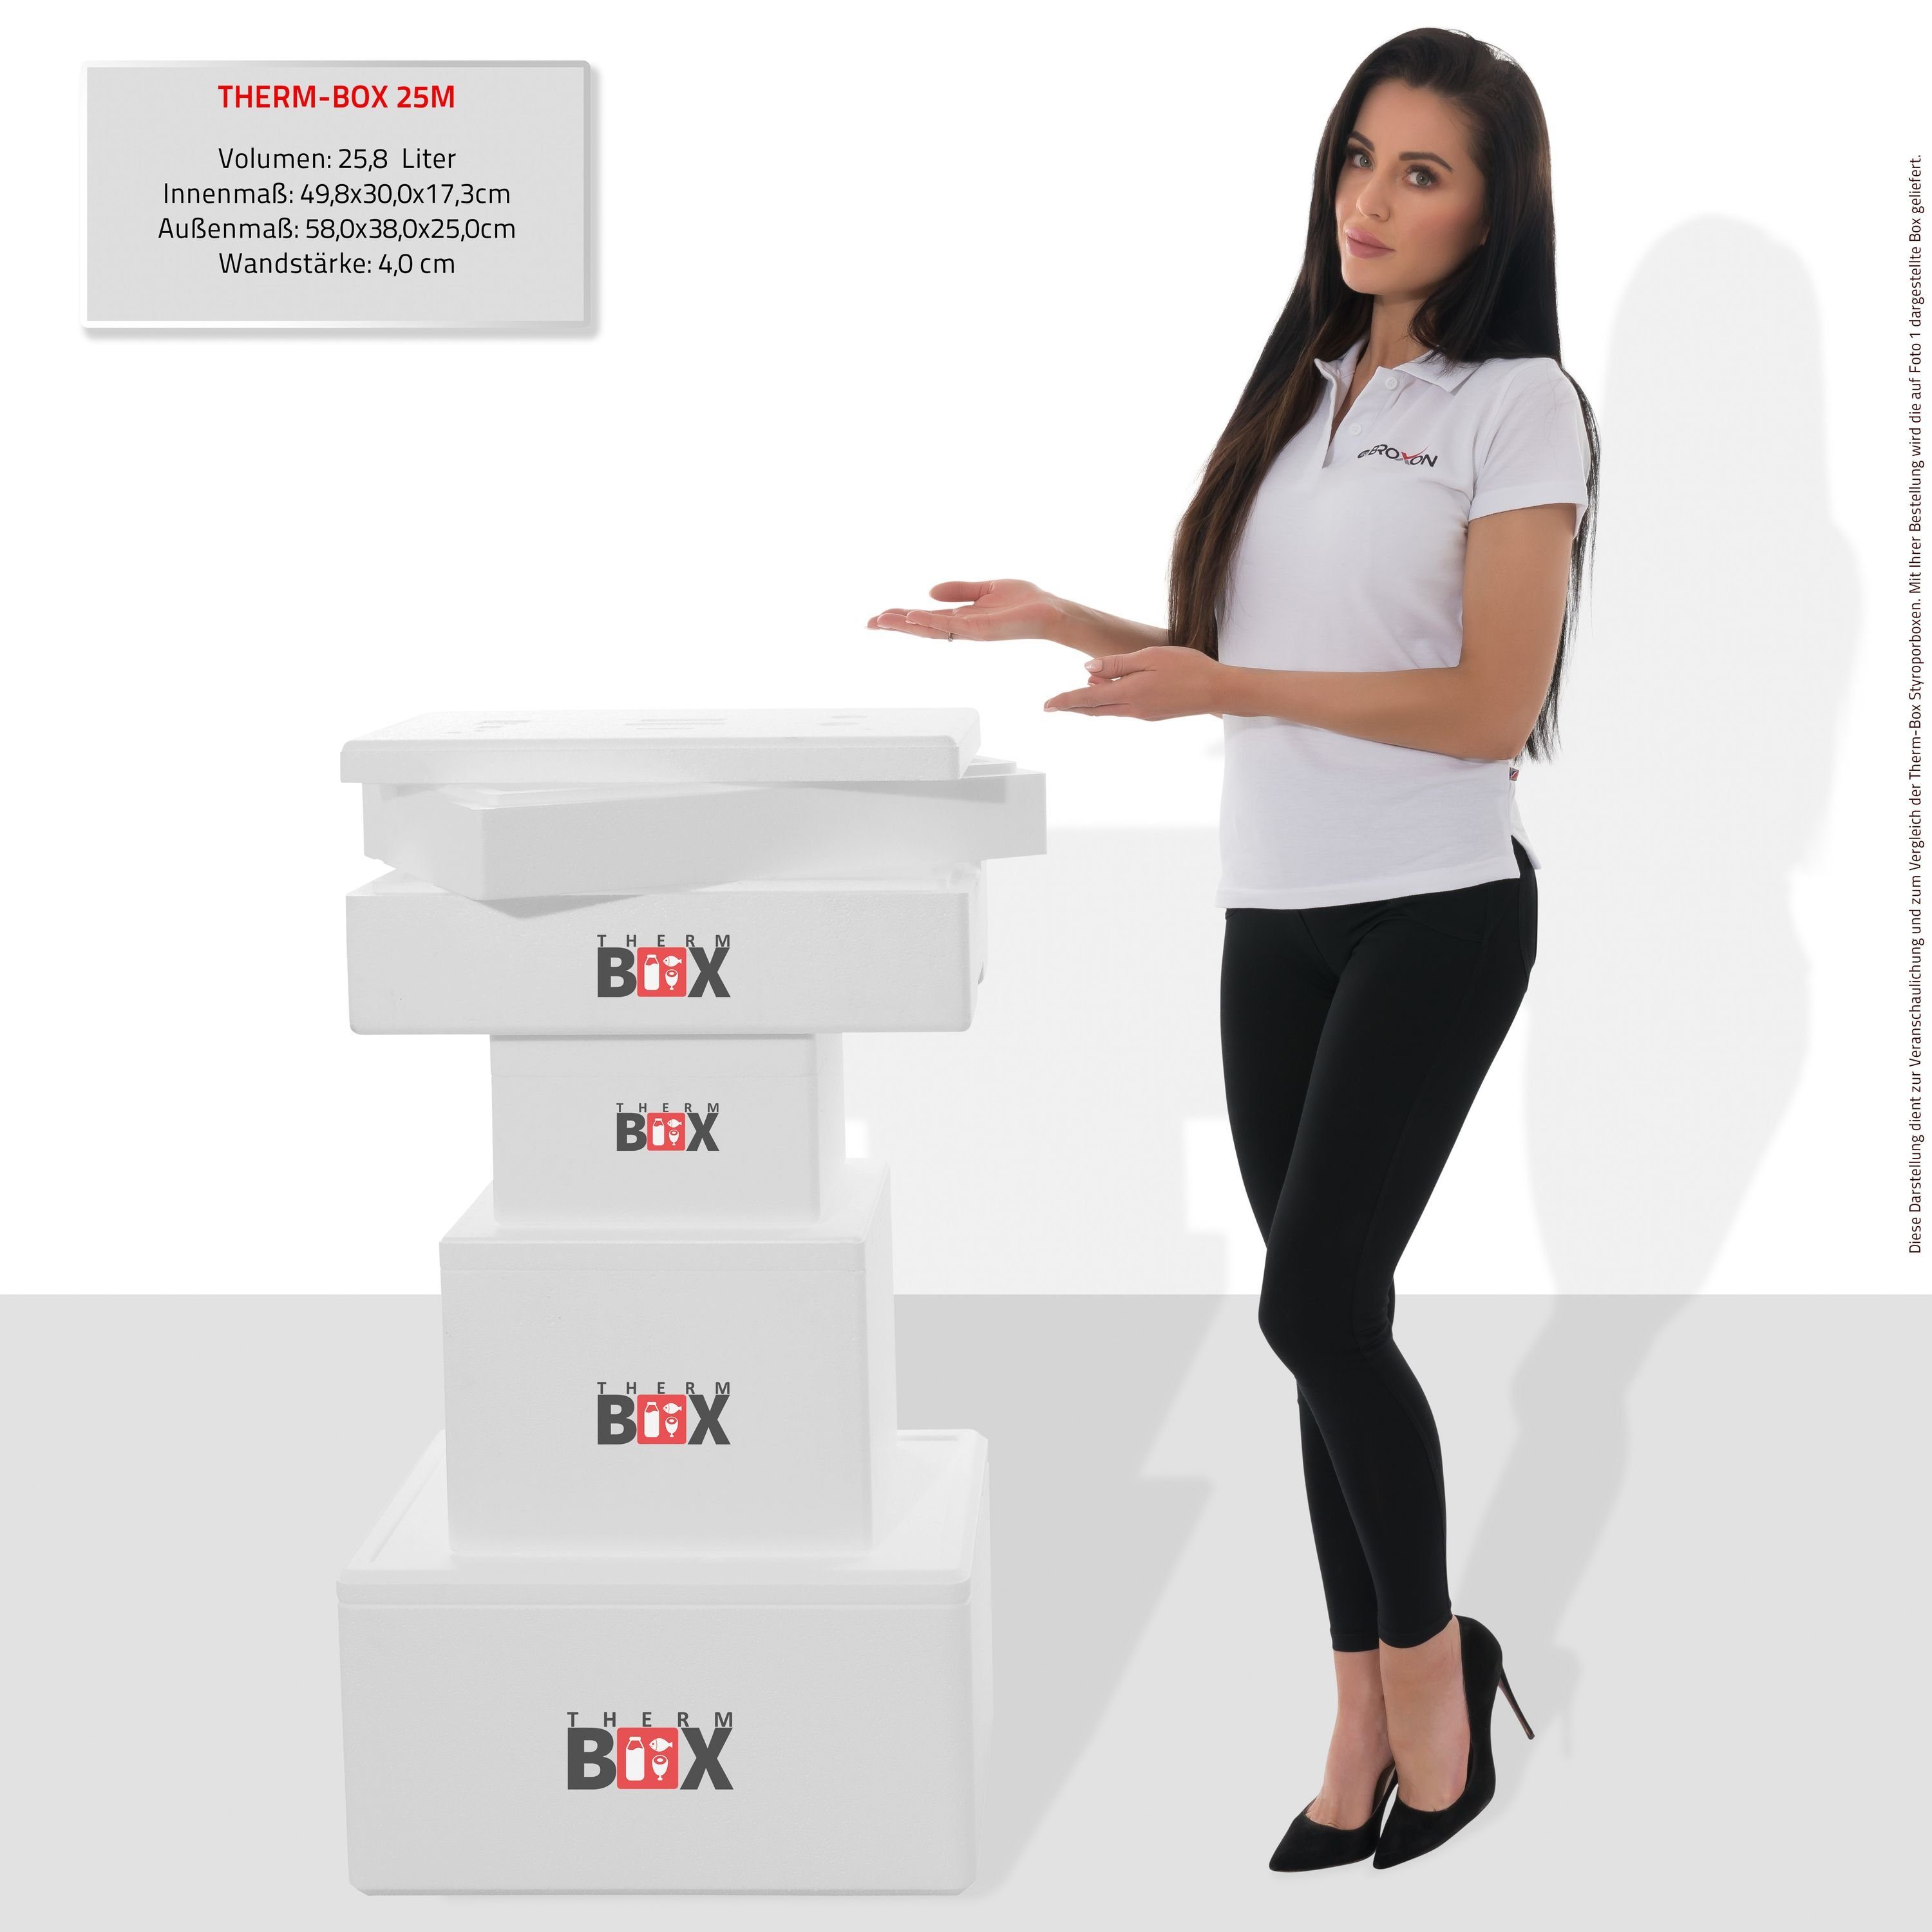 THERM-BOX Thermobehälter Modularbox 25M 4cm Innenmaß: Karton), im Kühlbox mit & Zusatzring Box Isolierbox Wand: Deckel (0-tlg., Erweiterbar Thermbox Styropor-Verdichtet, 25,8L Wiederverwendbar 49x30x17cm, Warmhaltebox